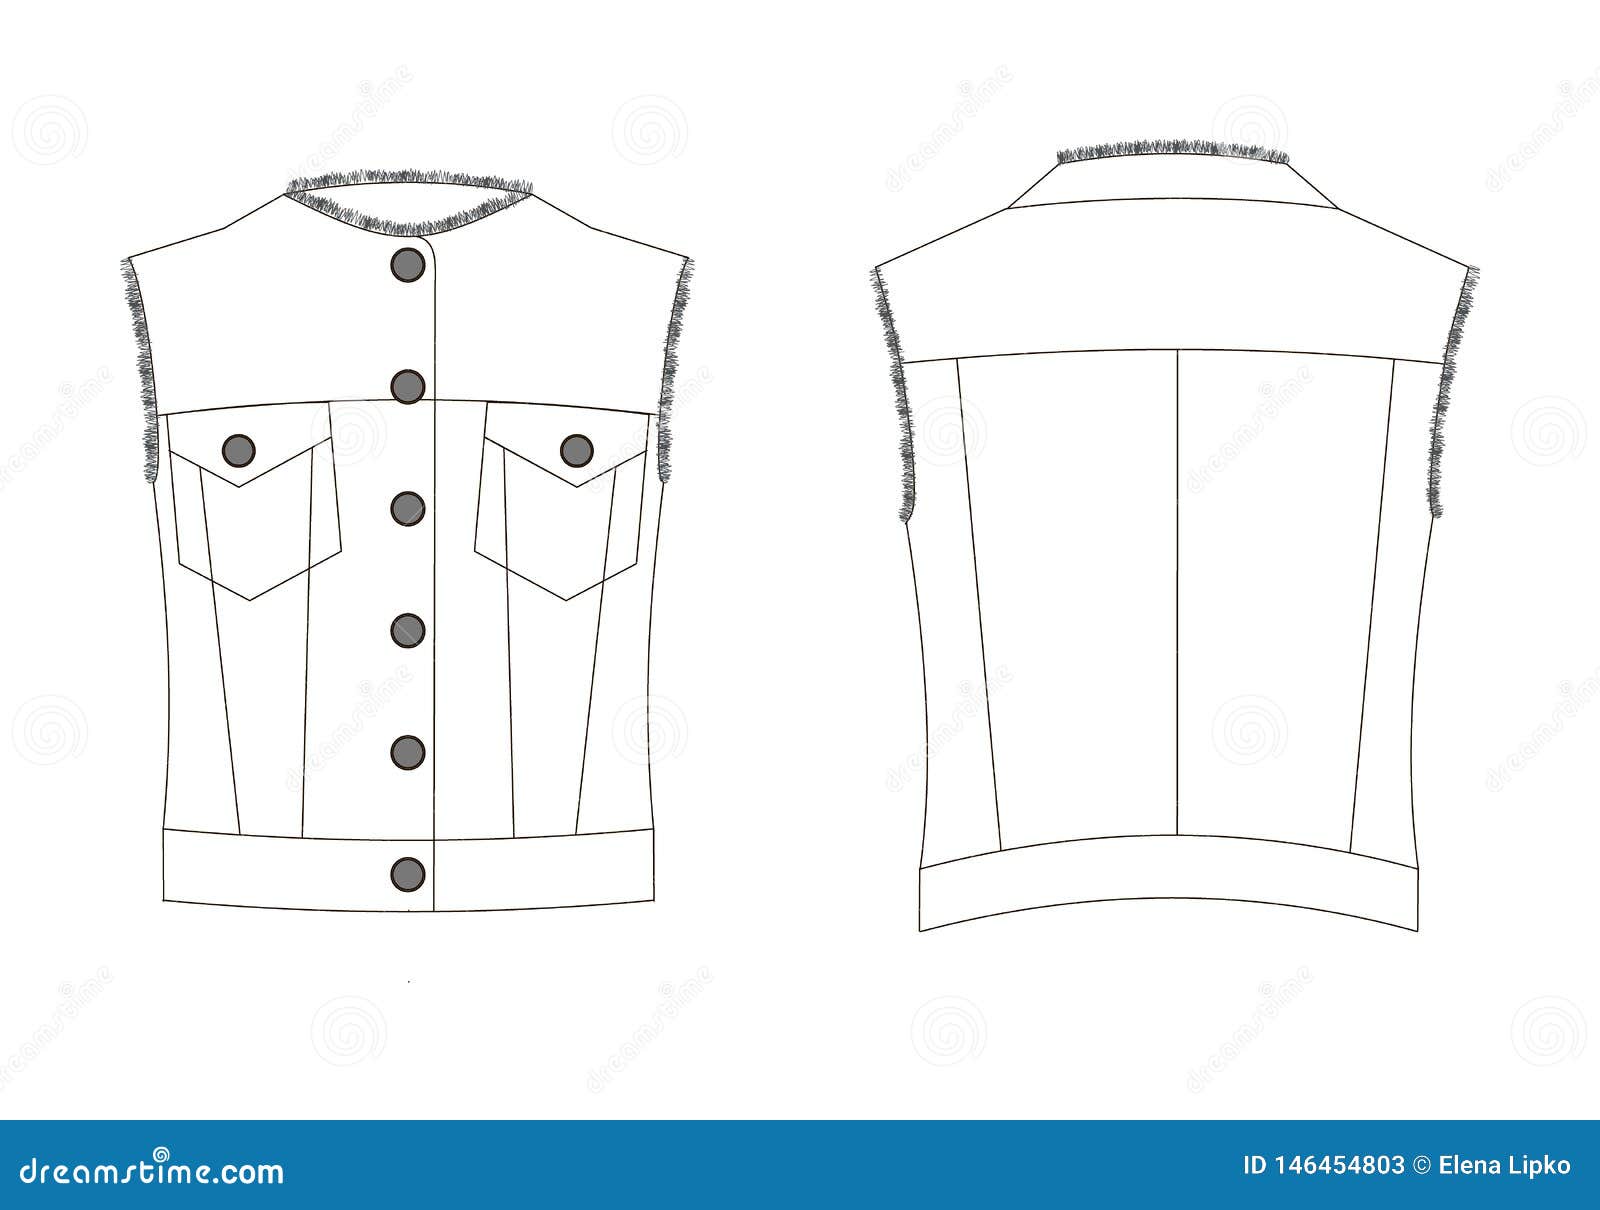 Premium Vector | Suit waistcoat. men's office wear. vector technical sketch.  mockup template.